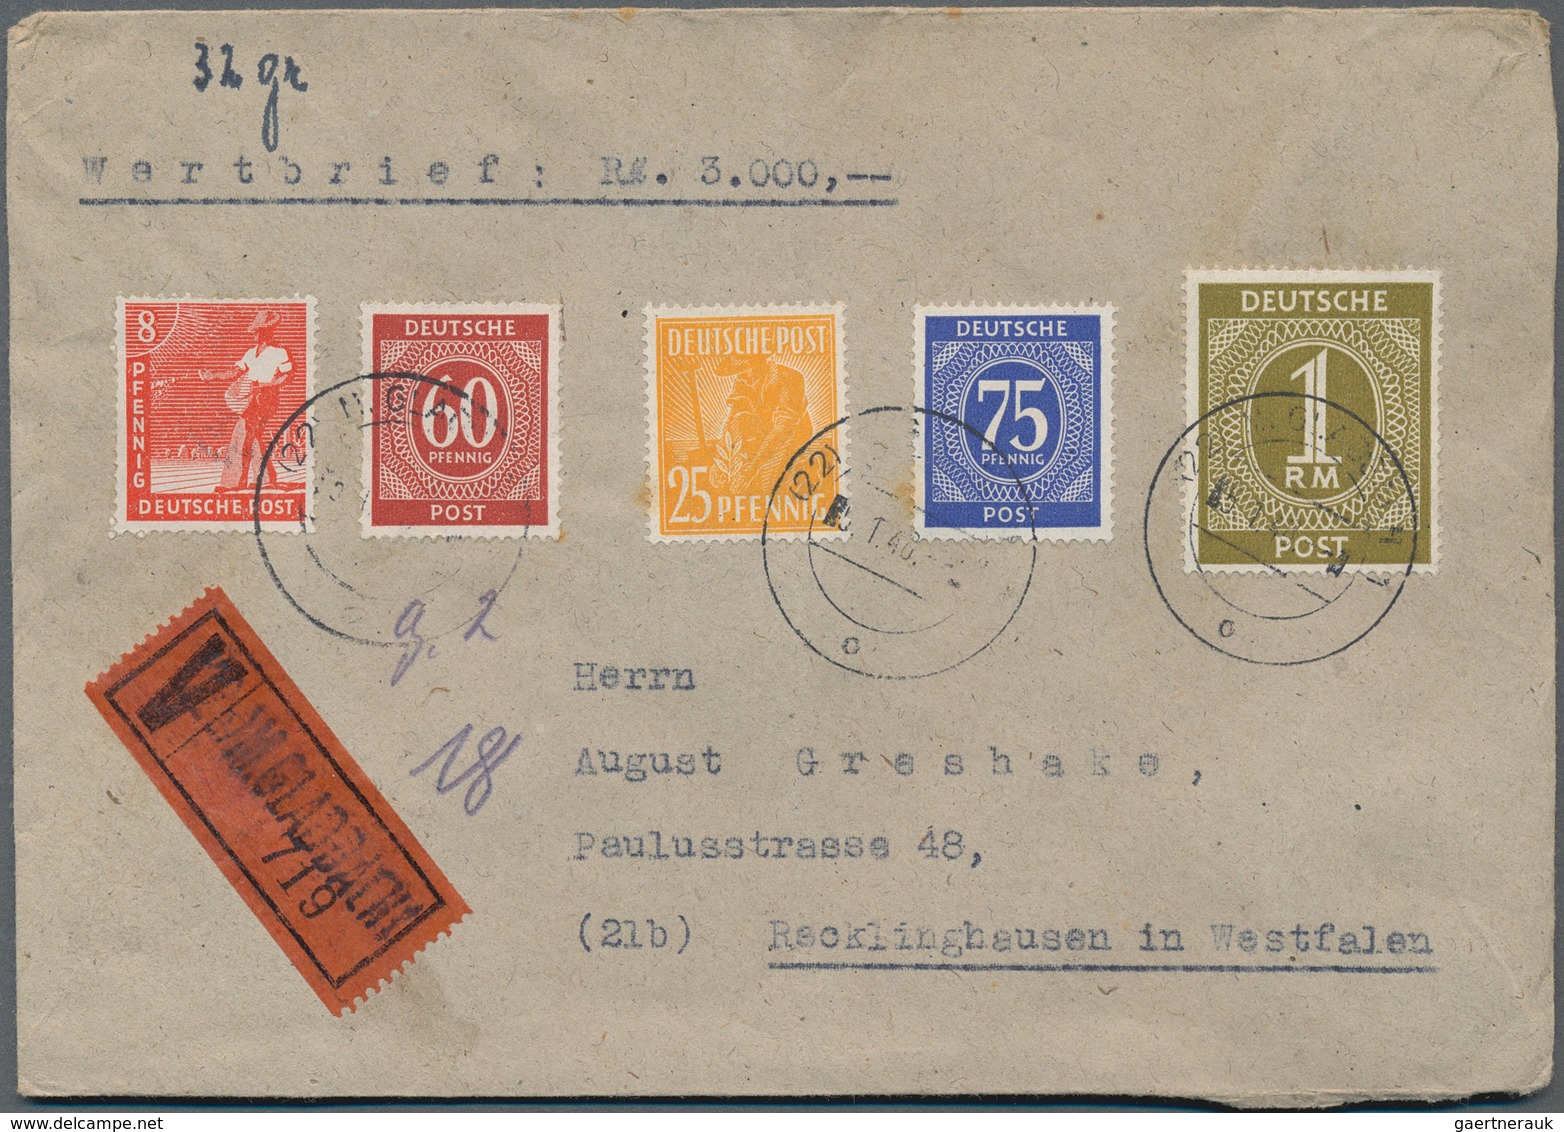 Alliierte Besetzung - Gemeinschaftsausgaben: 1947-1948, toller Posten mit über 500 R-Briefen, dabei